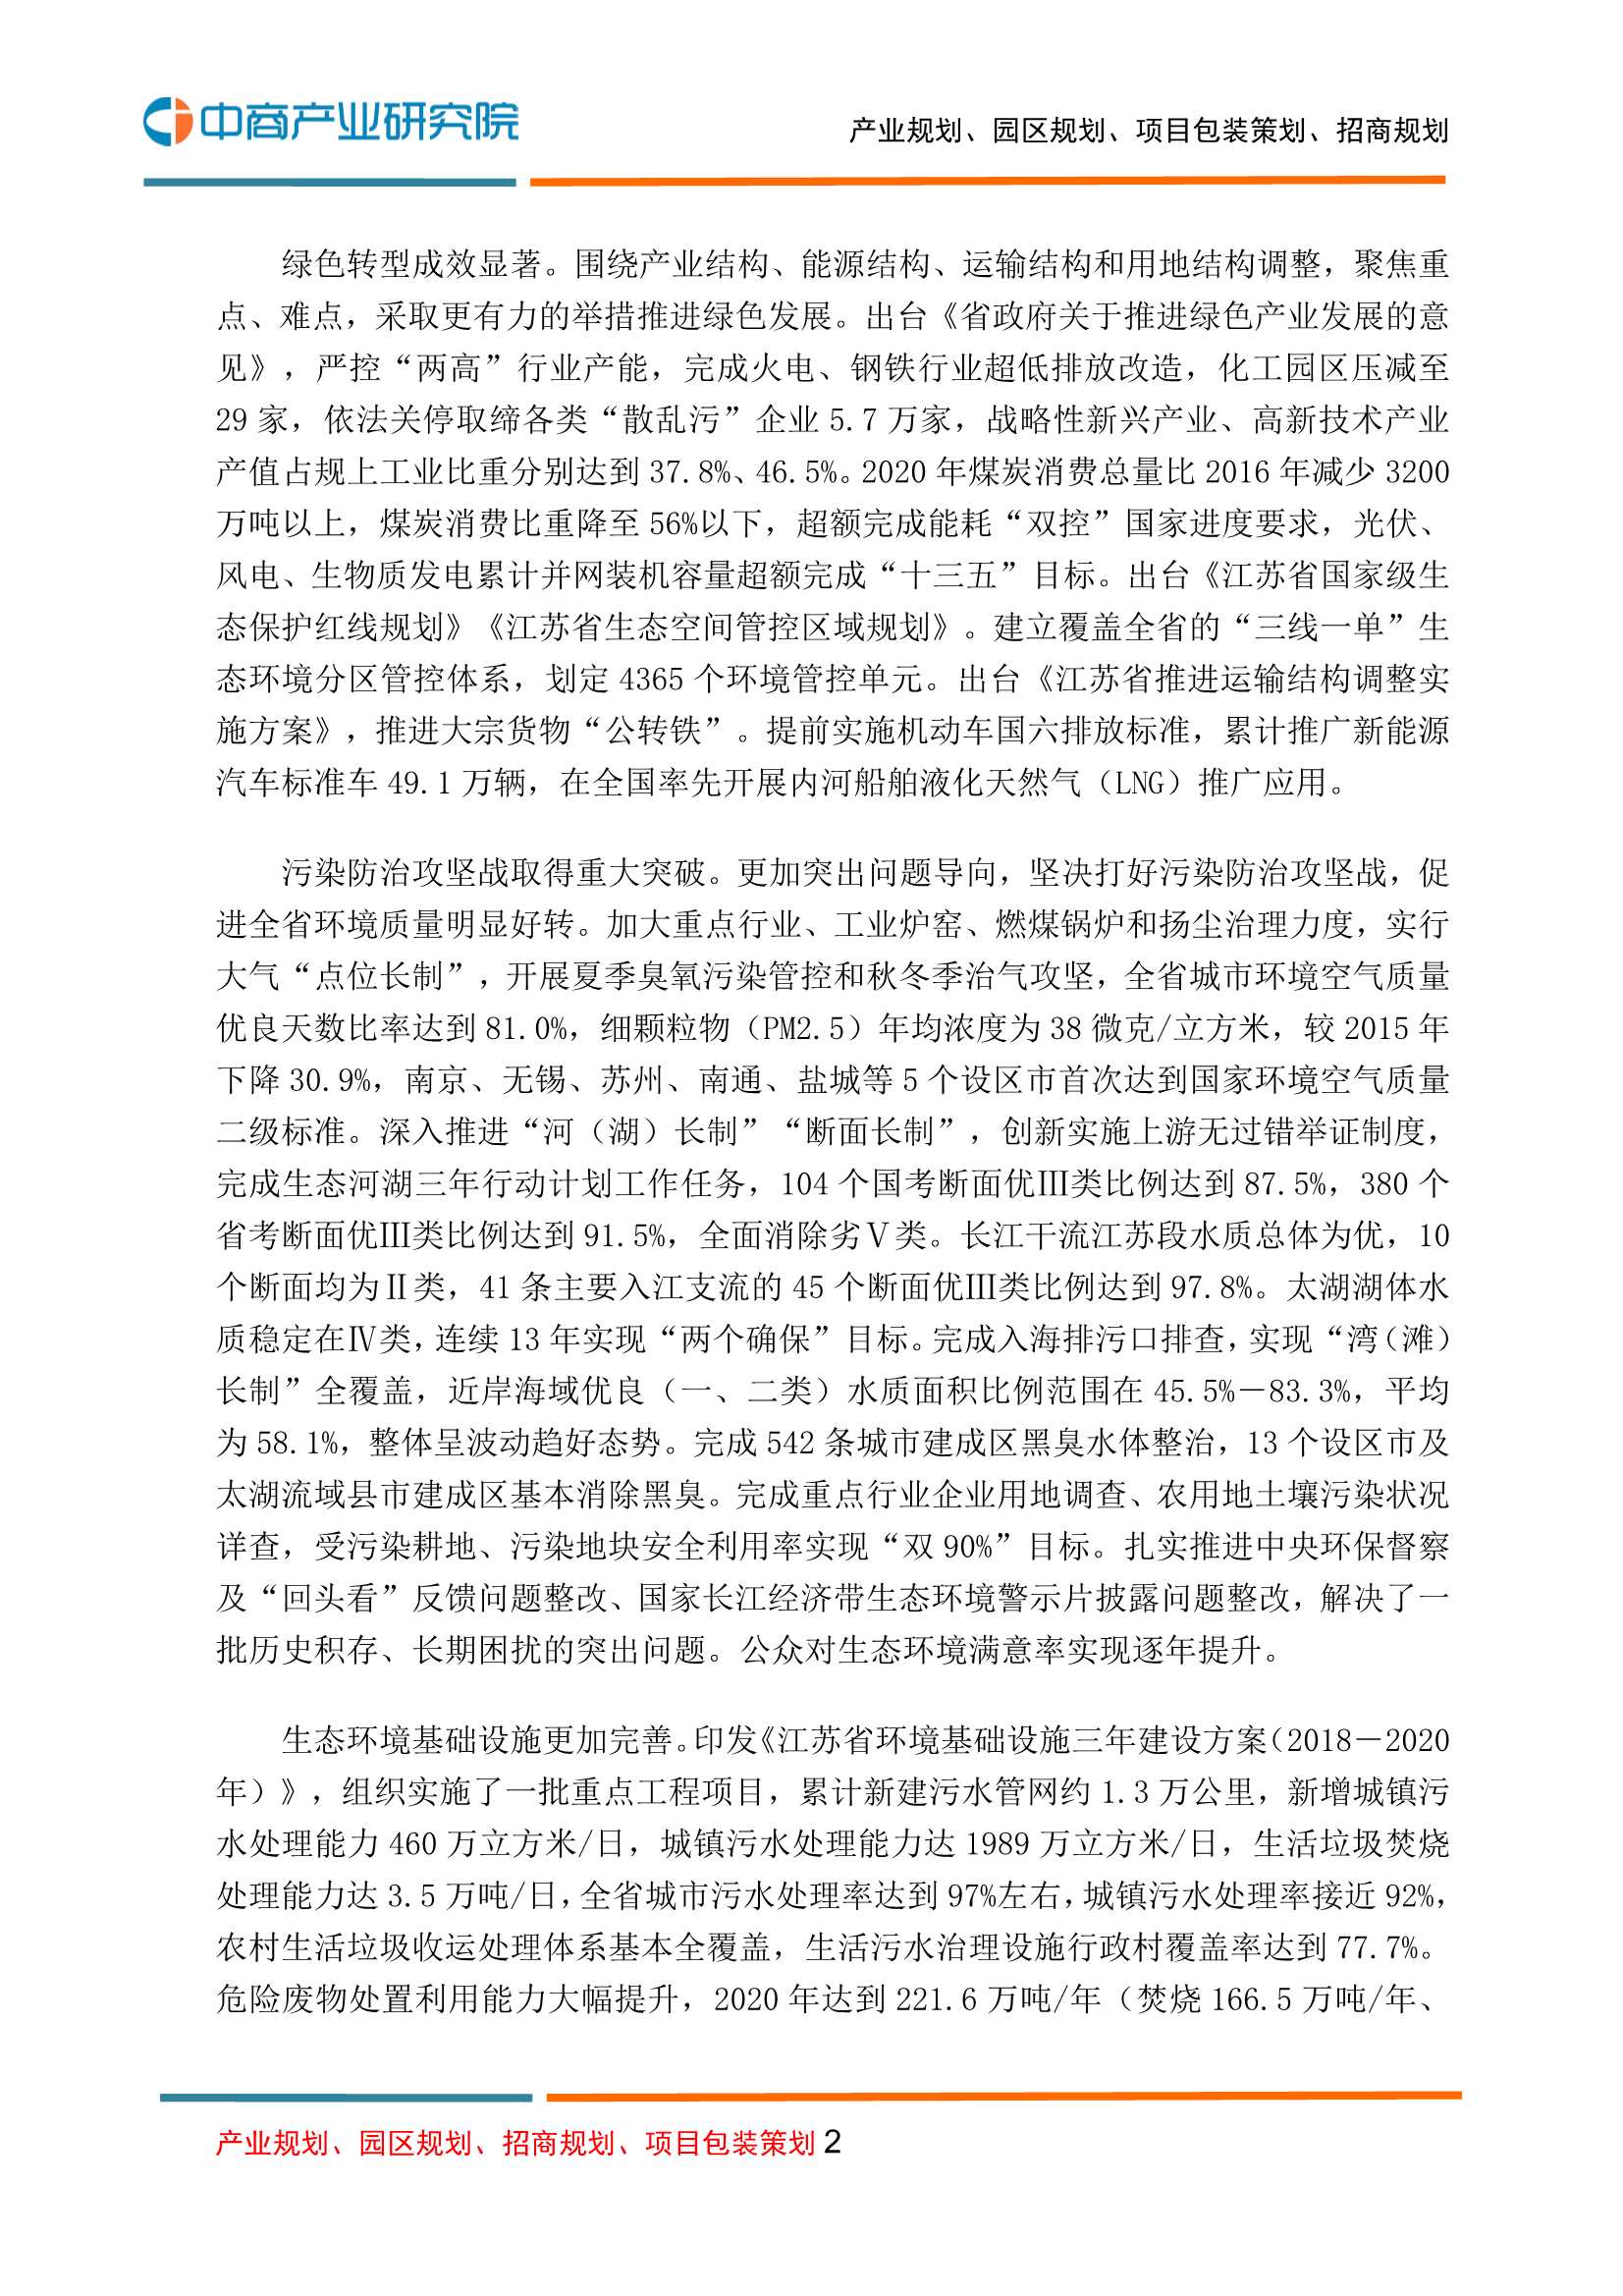 中商产业研究院-江苏省“十四五”生态环境保护规划-2021.12-47页